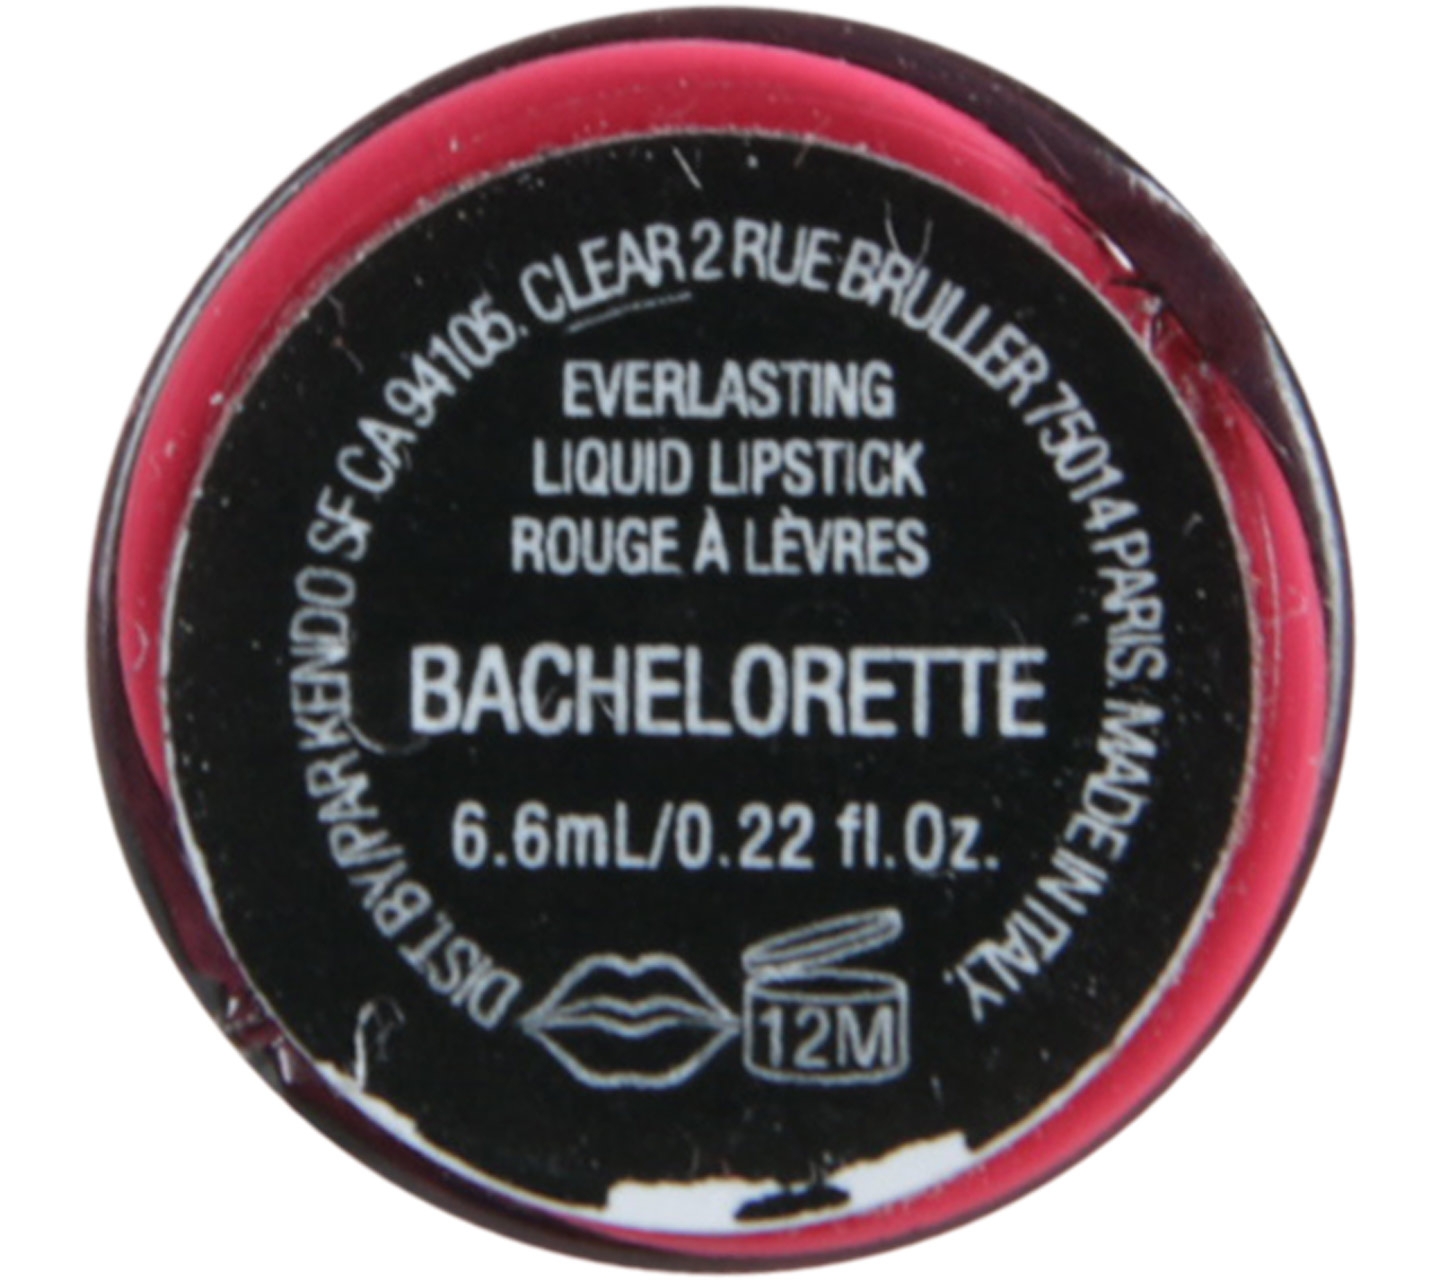 Kat Von D Bachelorette Everlasting Liquid Lipstick Lips